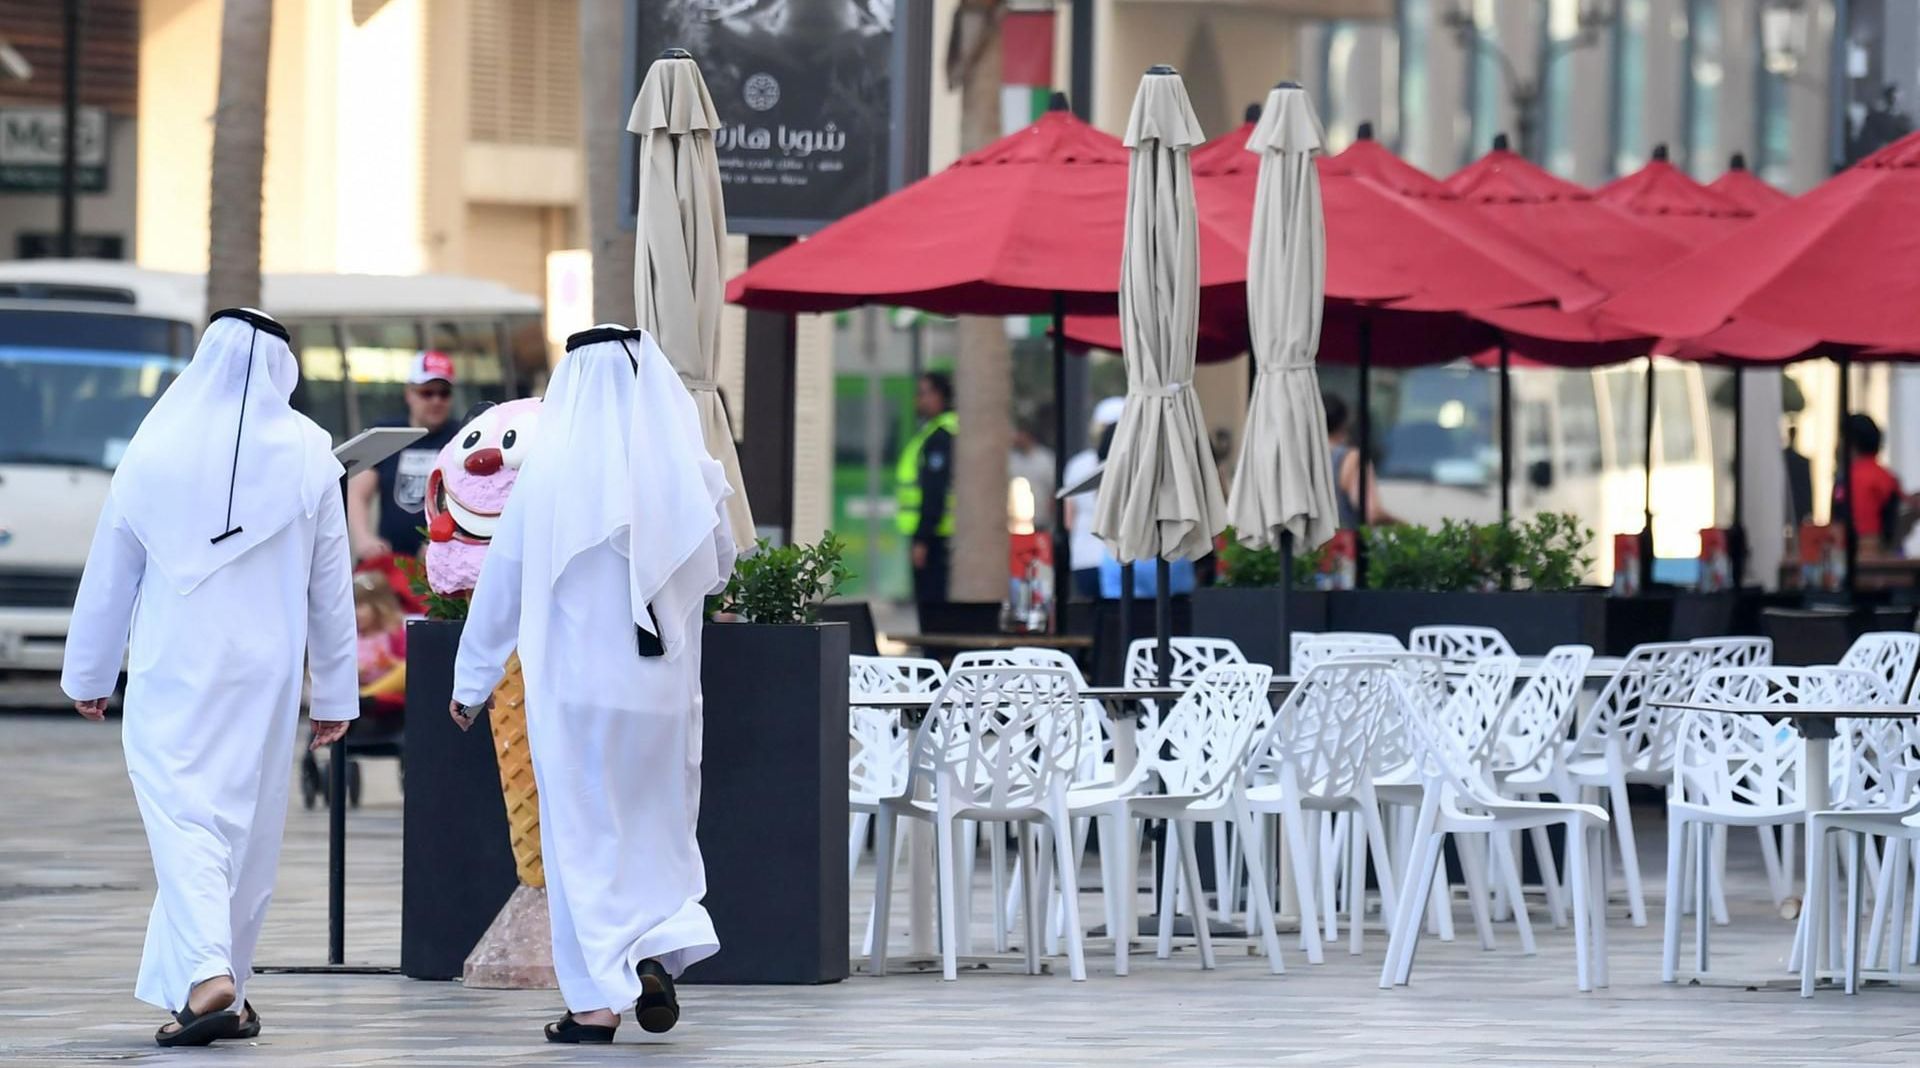 بلدية دبي تسجل امتثالًا بنسبة 97.7% لإرشادات السلامة بين المؤسسات التجارية خلال الأشهر الستة الأولى لعام 2021.